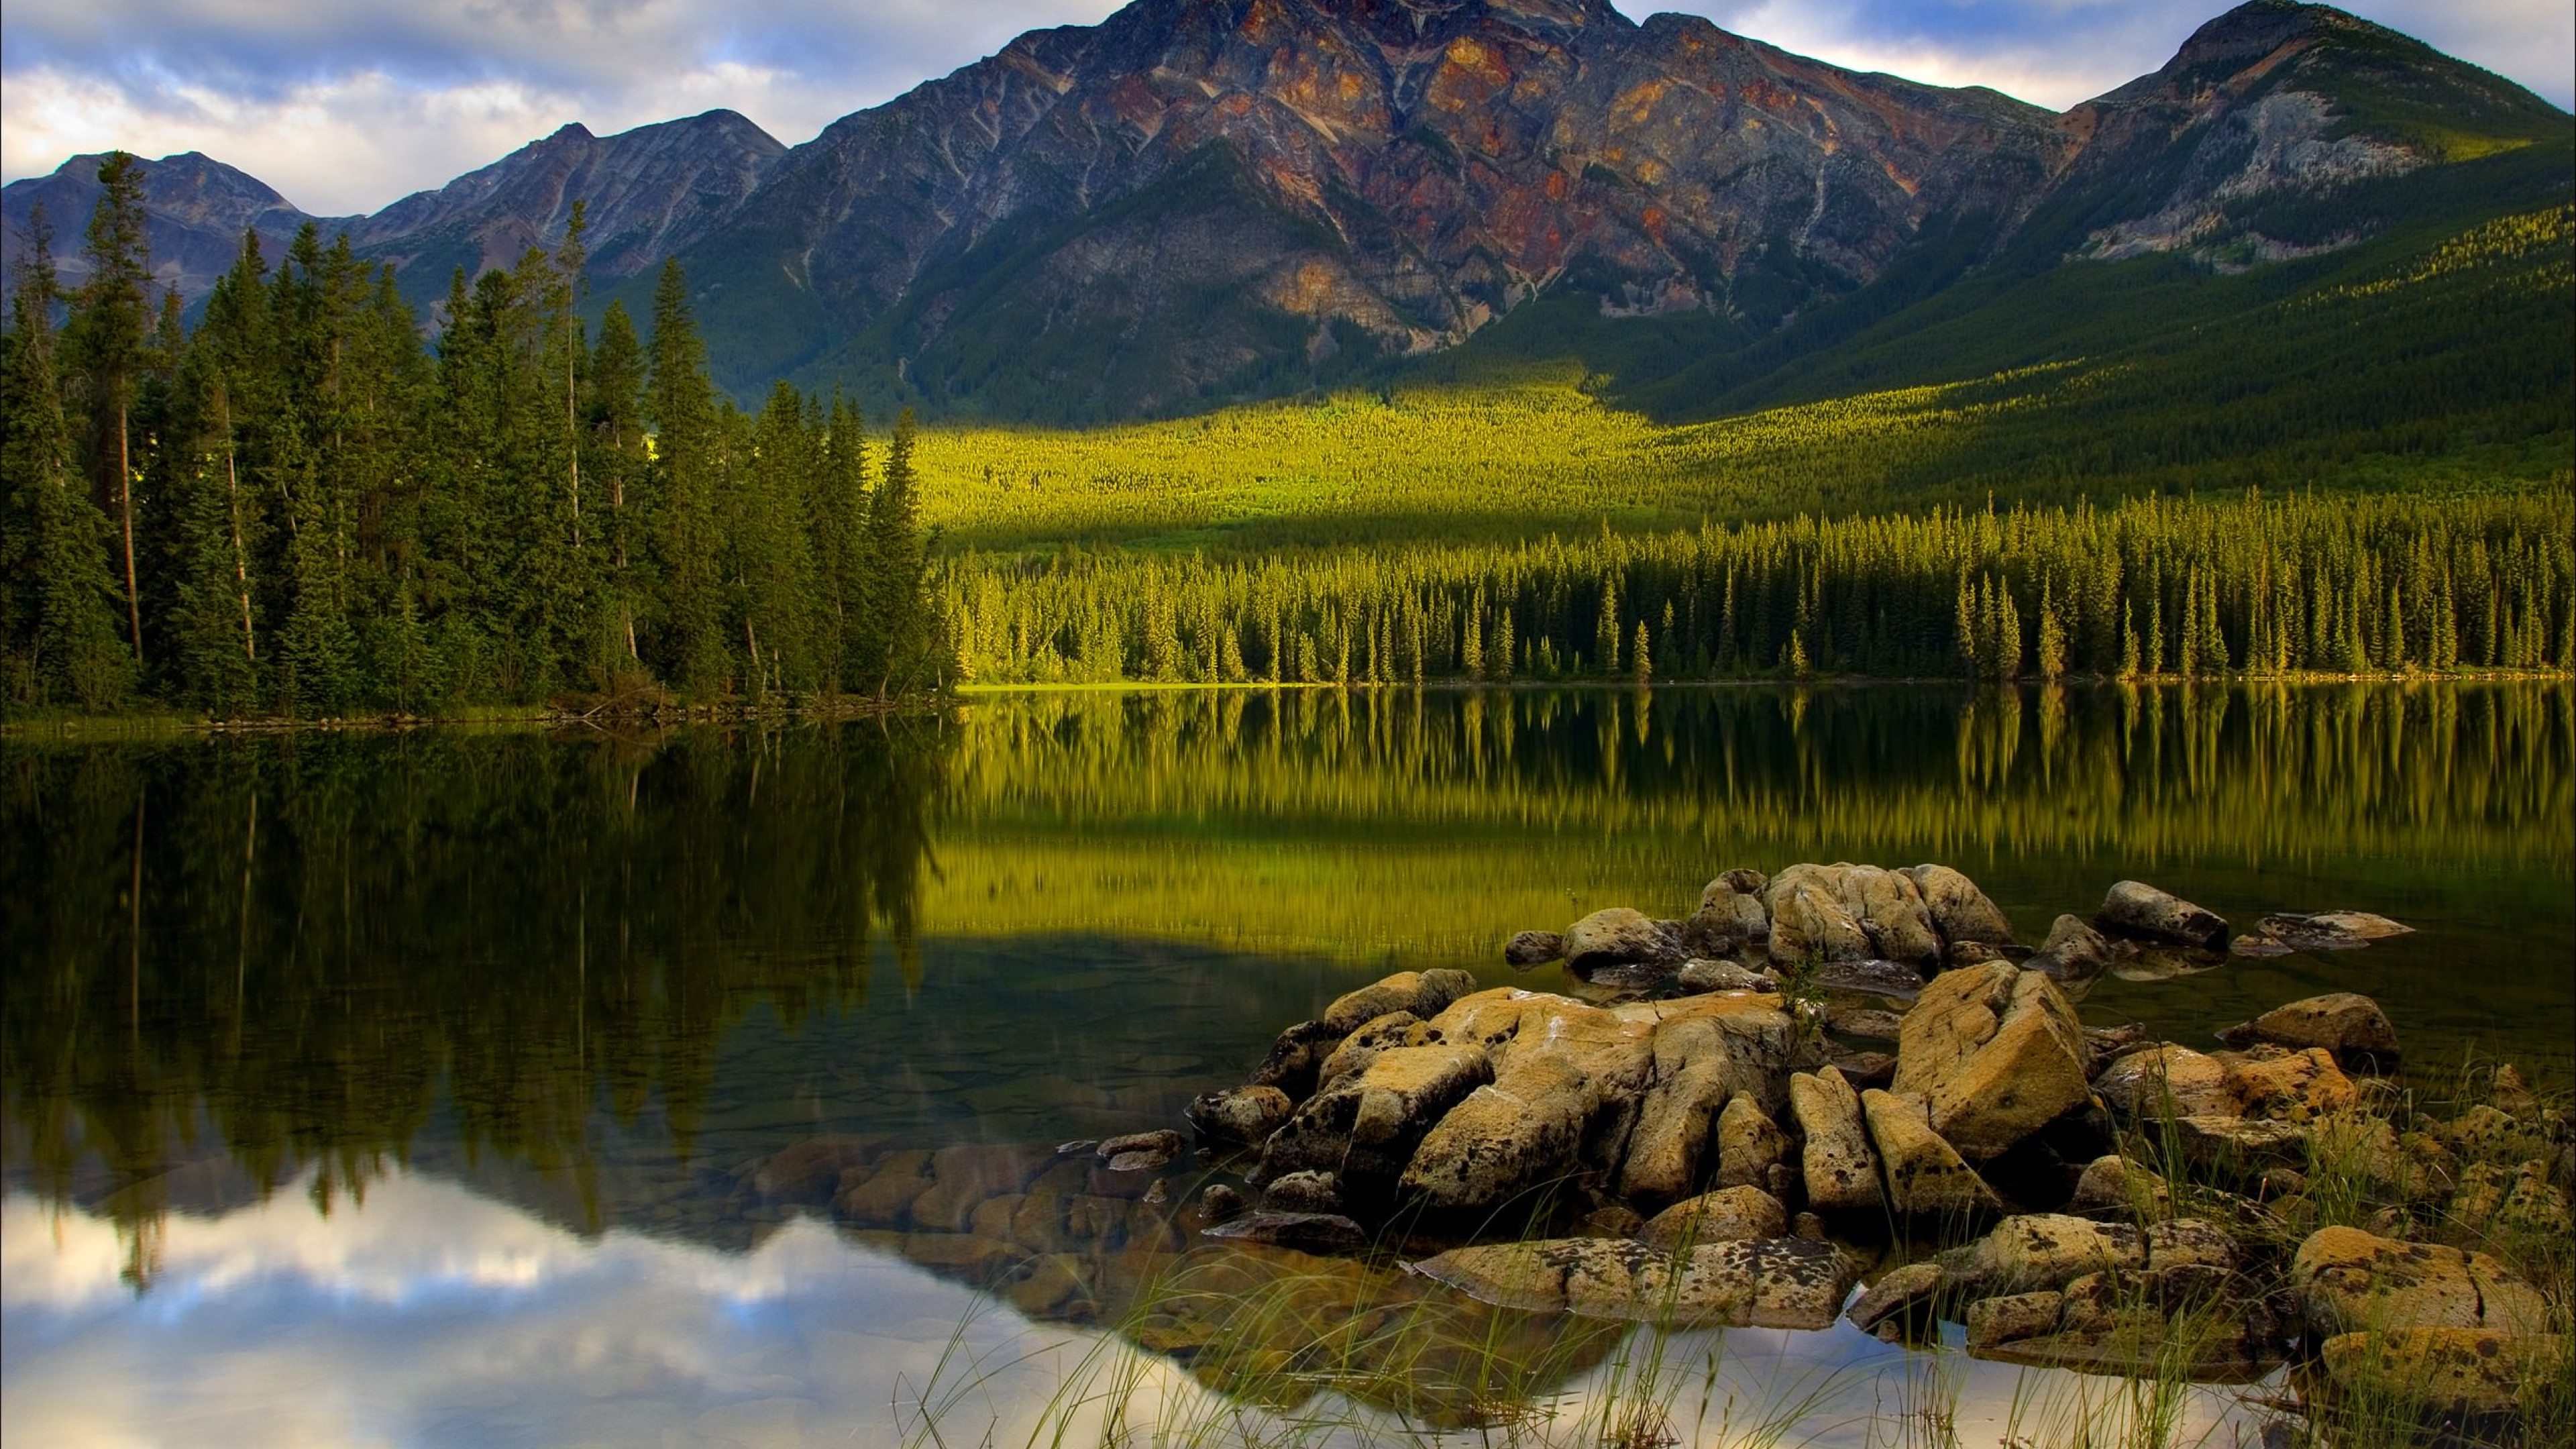 Природа обновилась. Национальный парк джасперанады. Канада, Джаспер, озеро. Национальный парк Джаспер Канада фото.